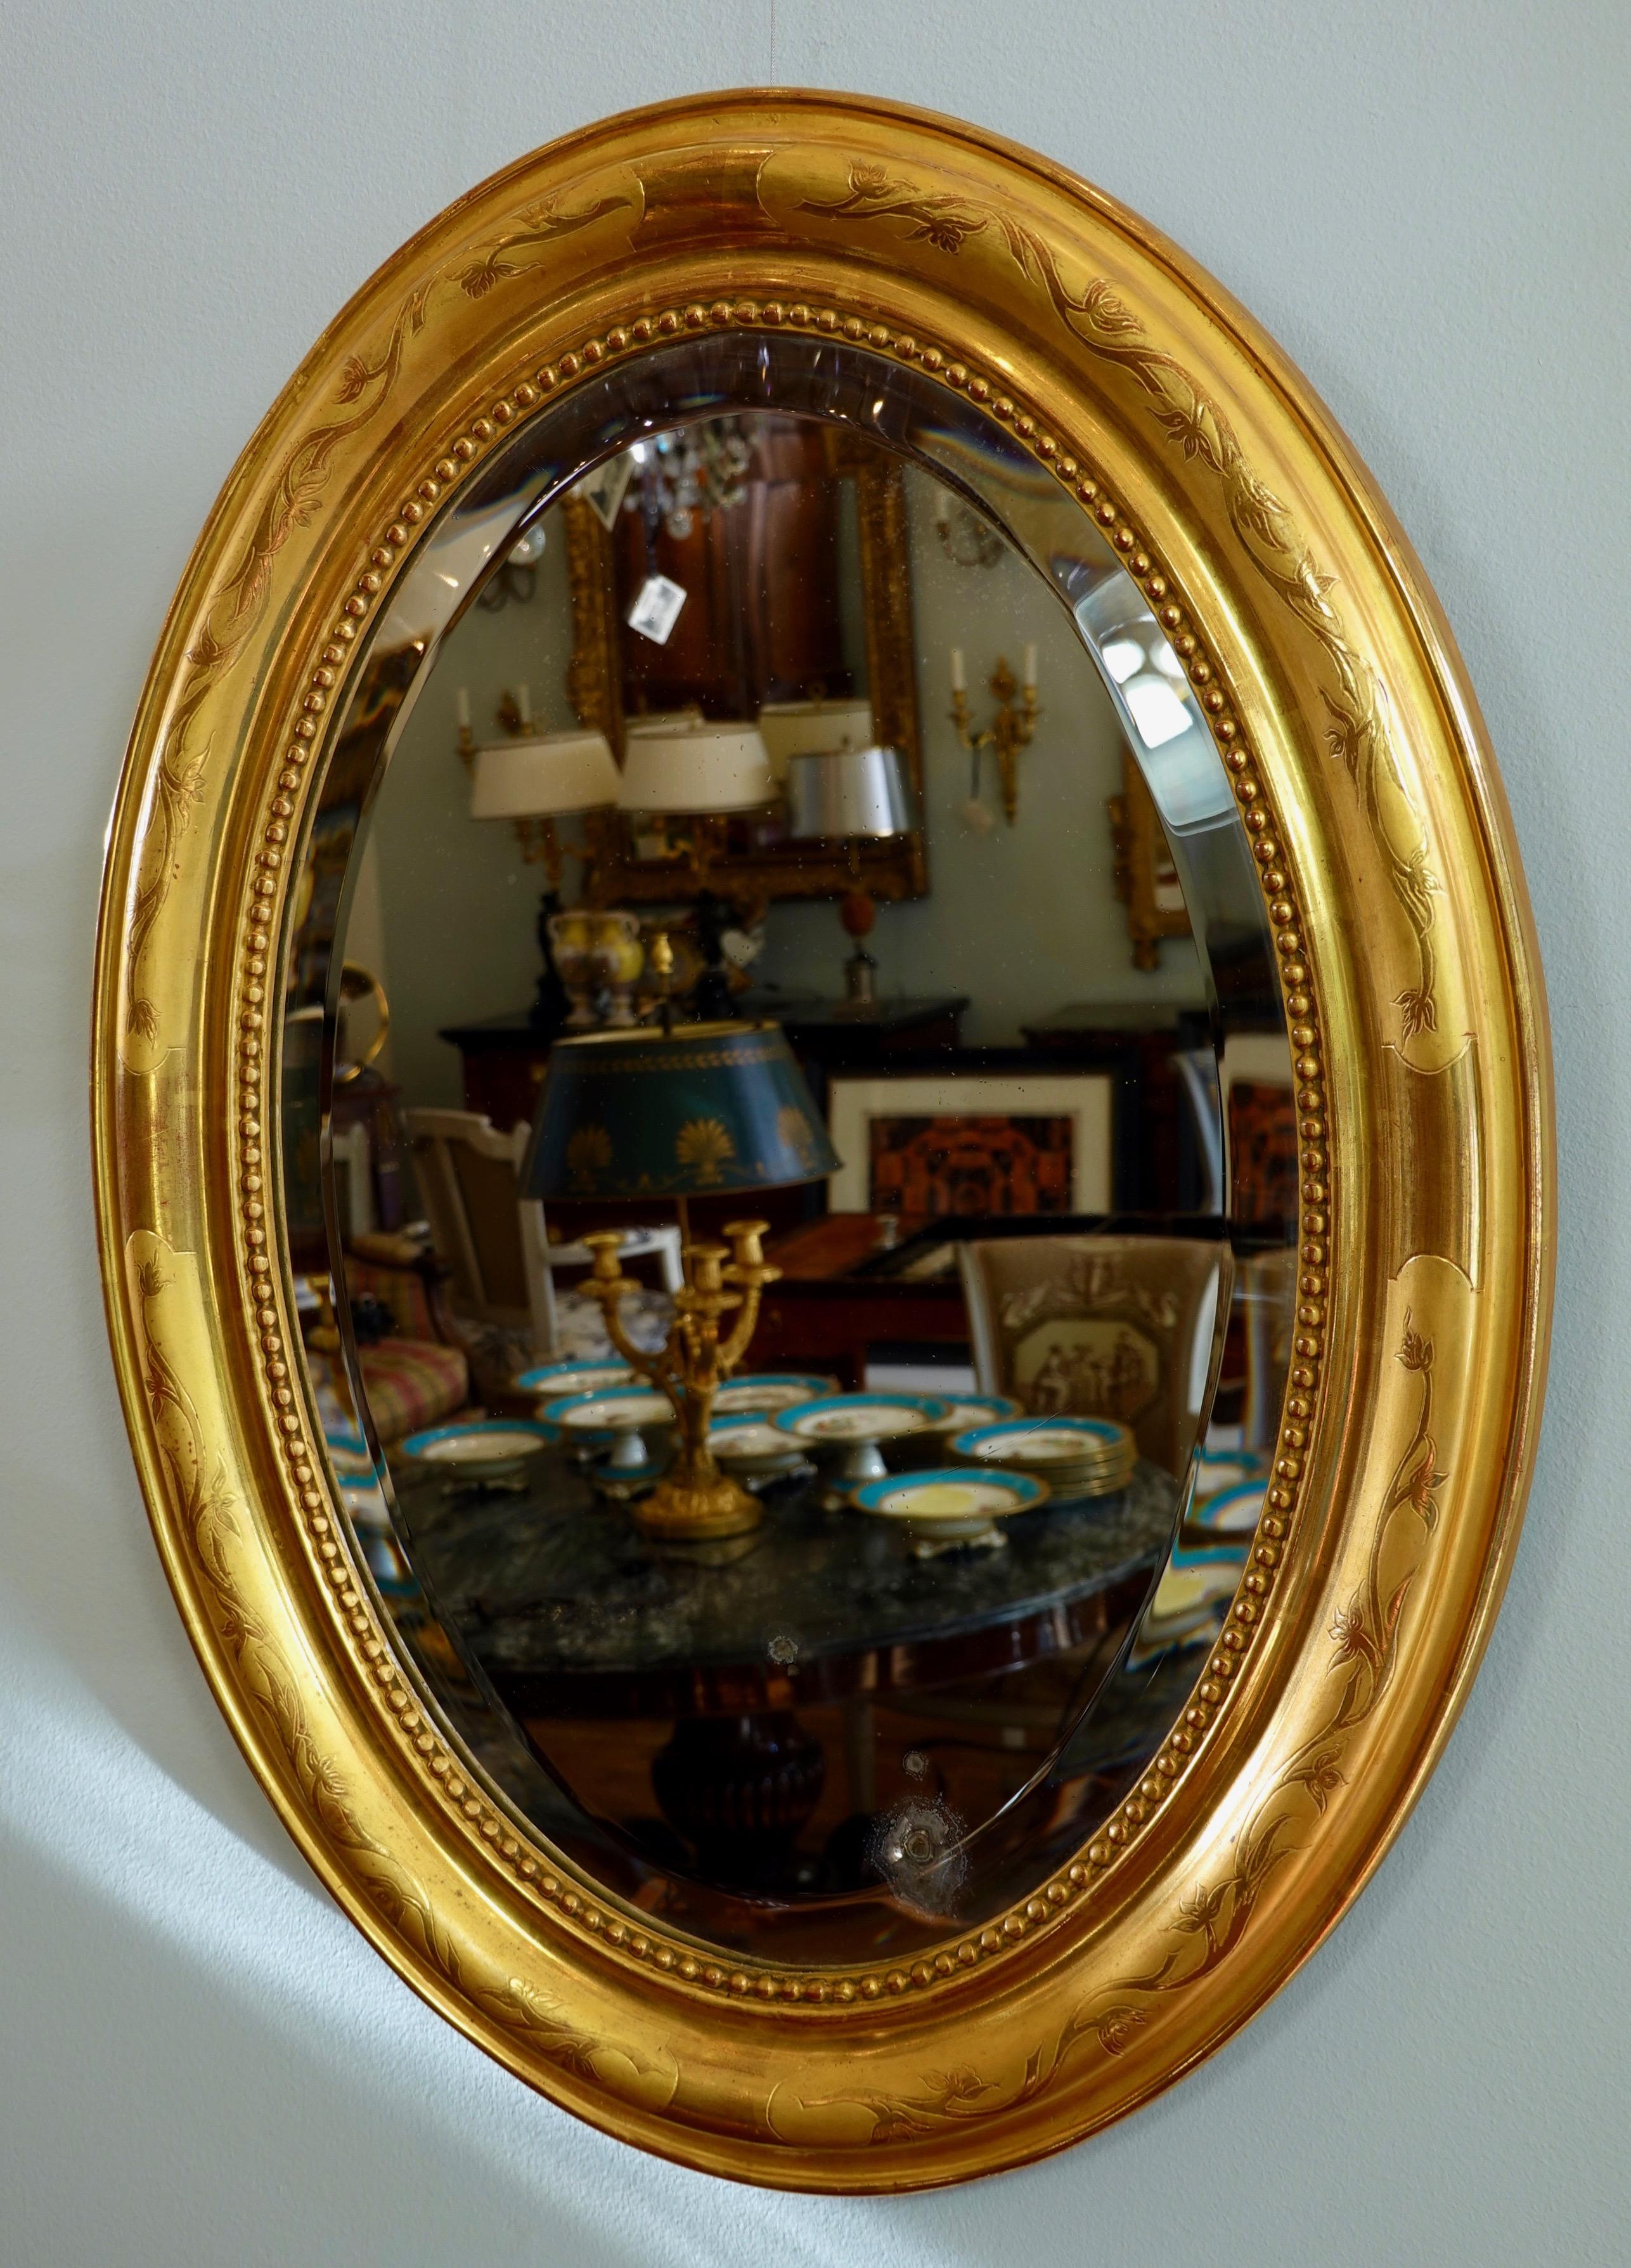 Miroir ovale français Charles X avec verre biseauté d'origine. Le cadre est profondément moulé avec un motif de vigne et des perles sur le périmètre intérieur. Le verre est légèrement endommagé.